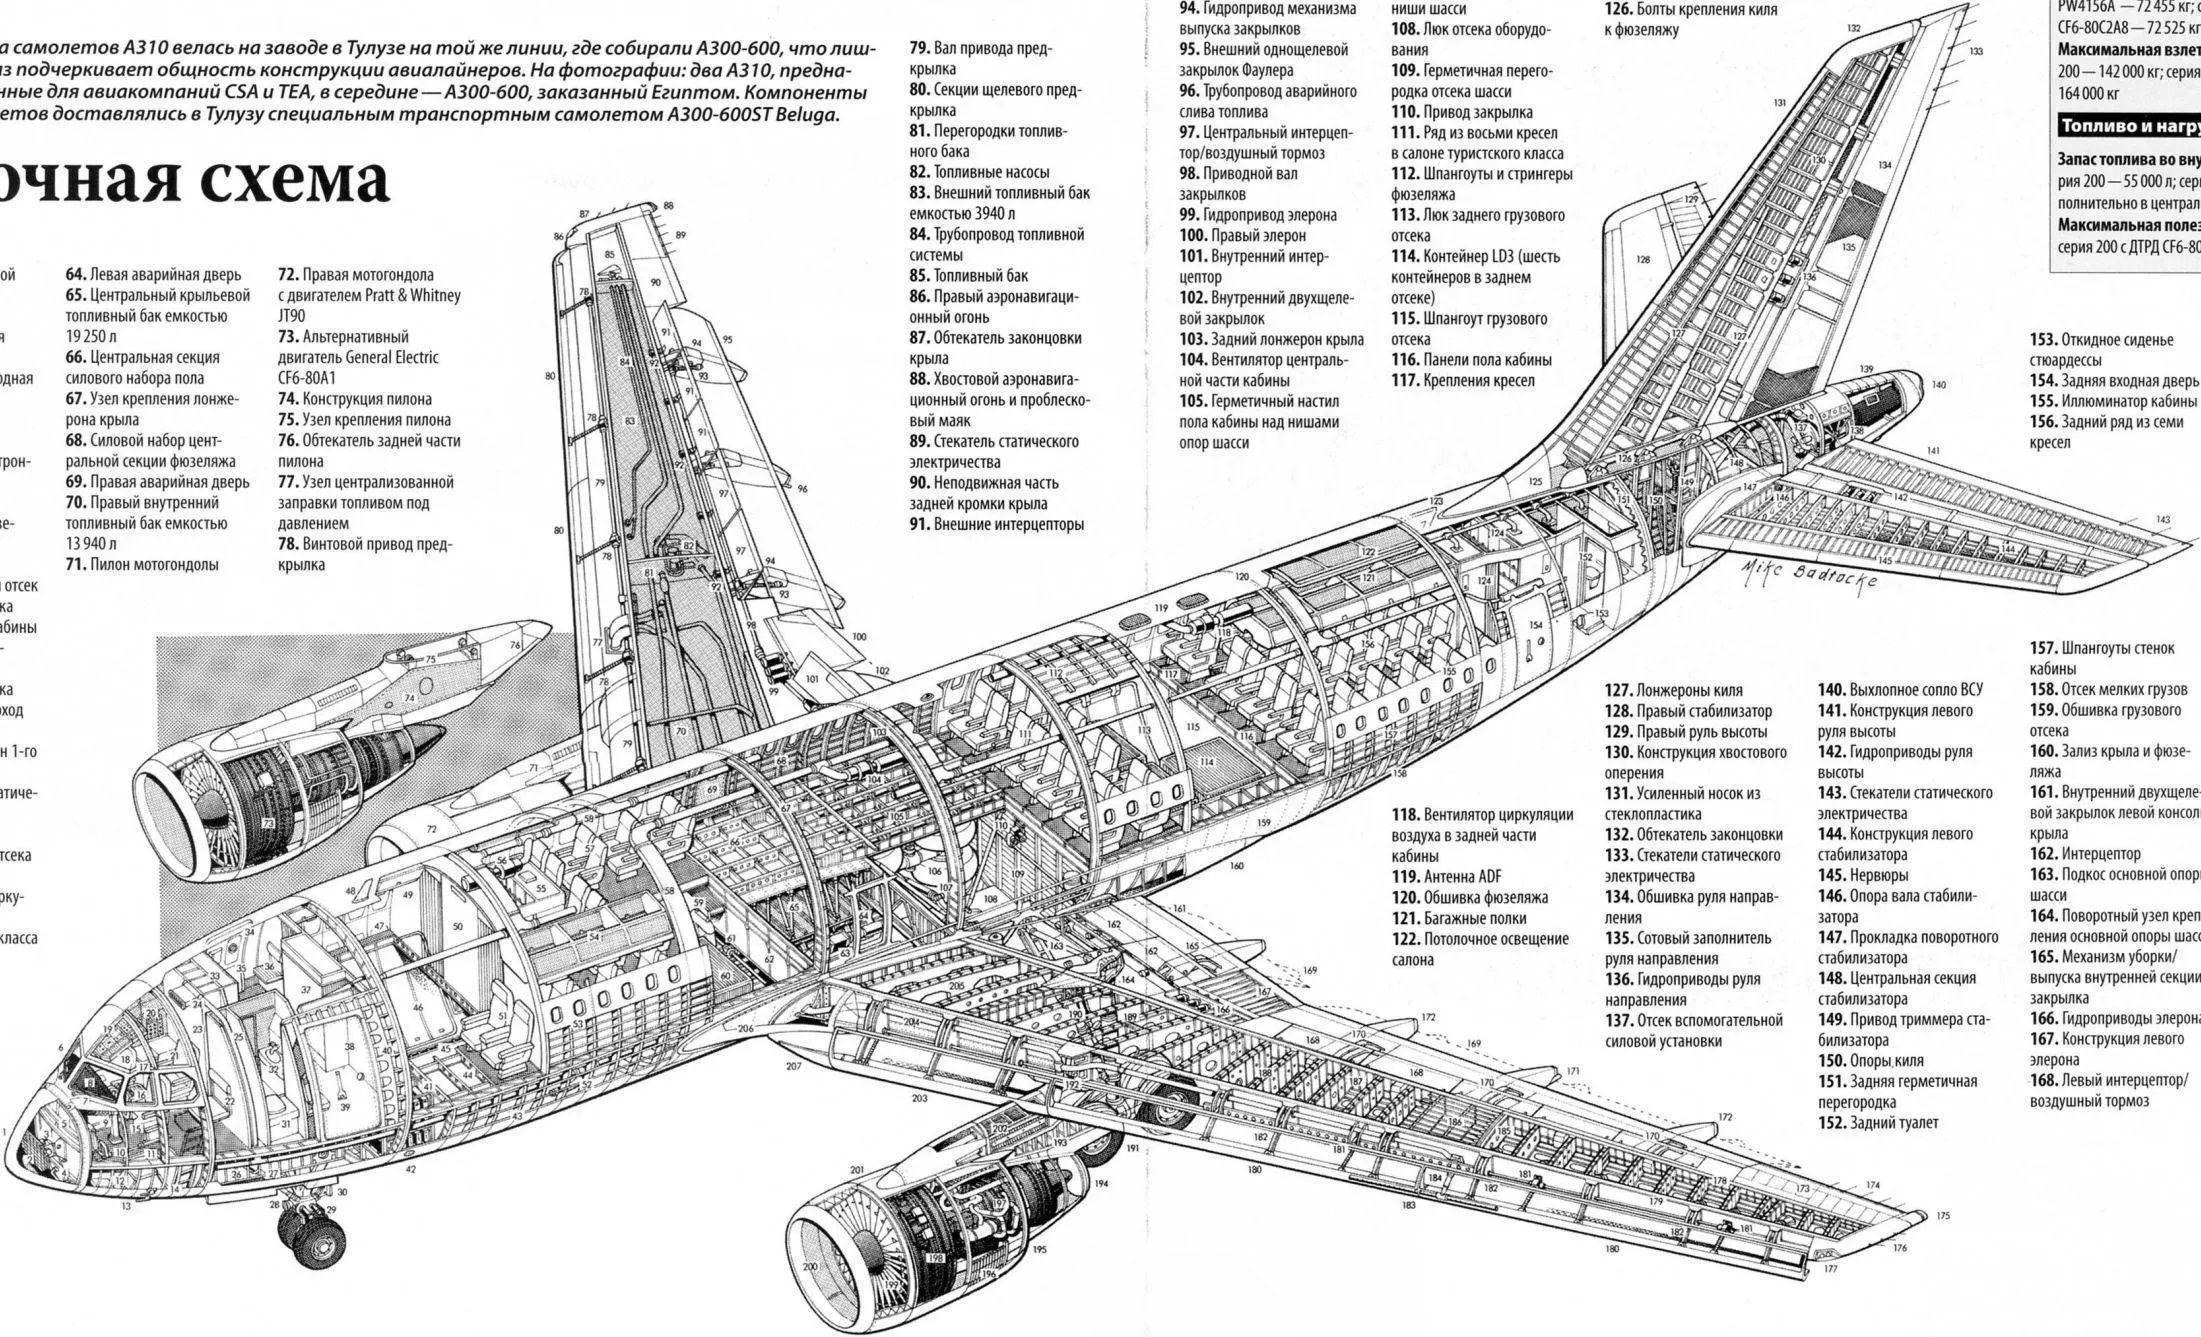 Схема салона и лучшие места в самолете ту-214 — трансаэро